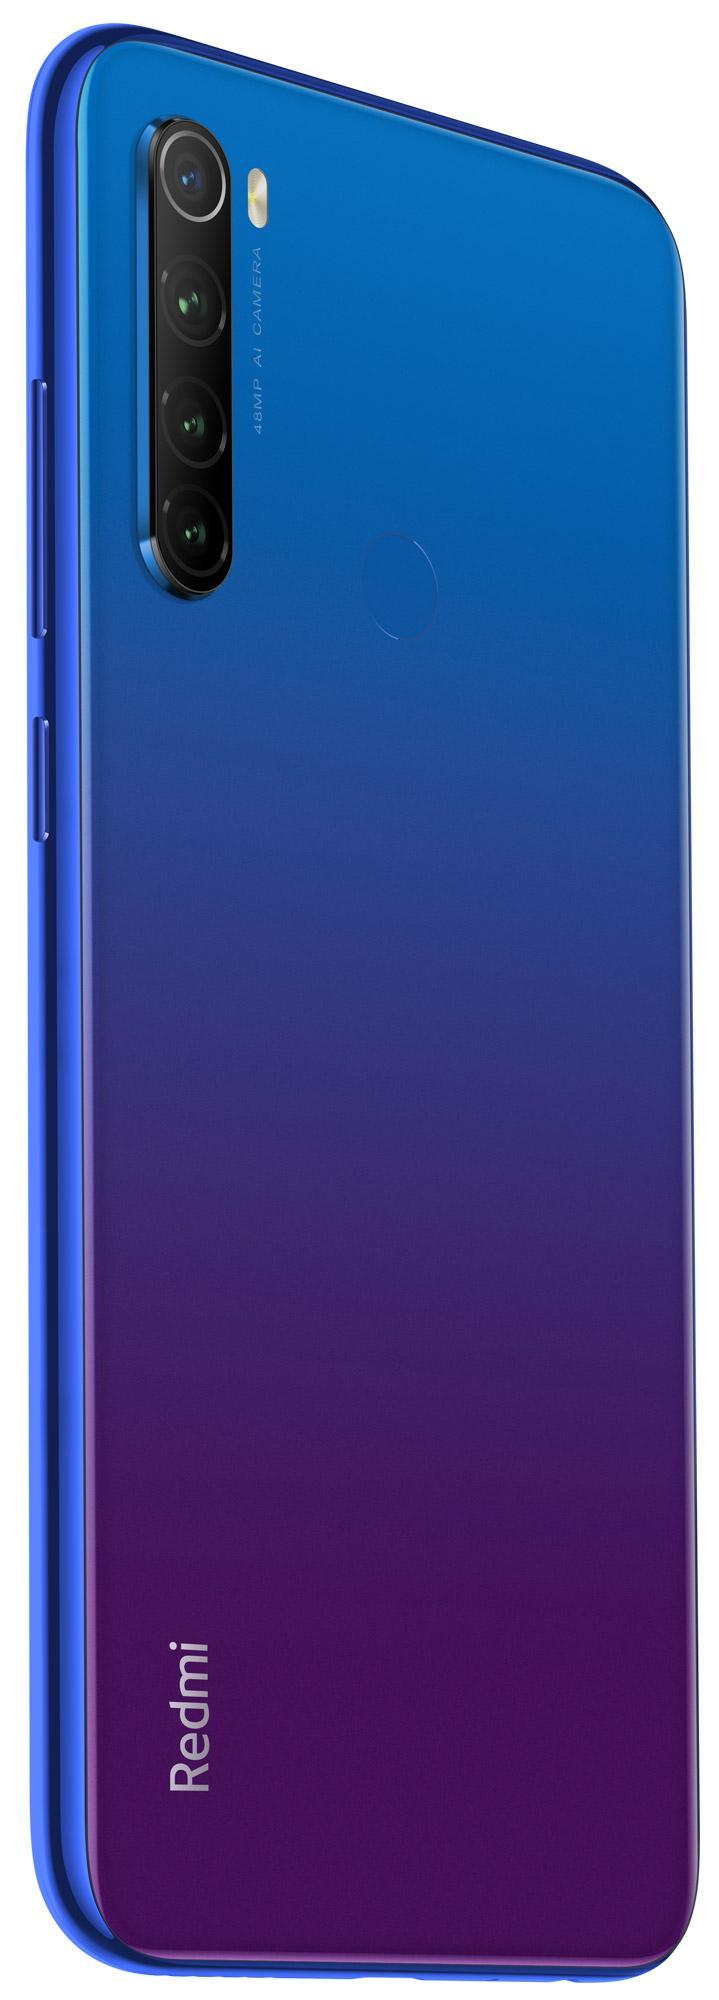 Цена Смартфон Xiaomi Redmi Note 8T 4/64Gb Blue